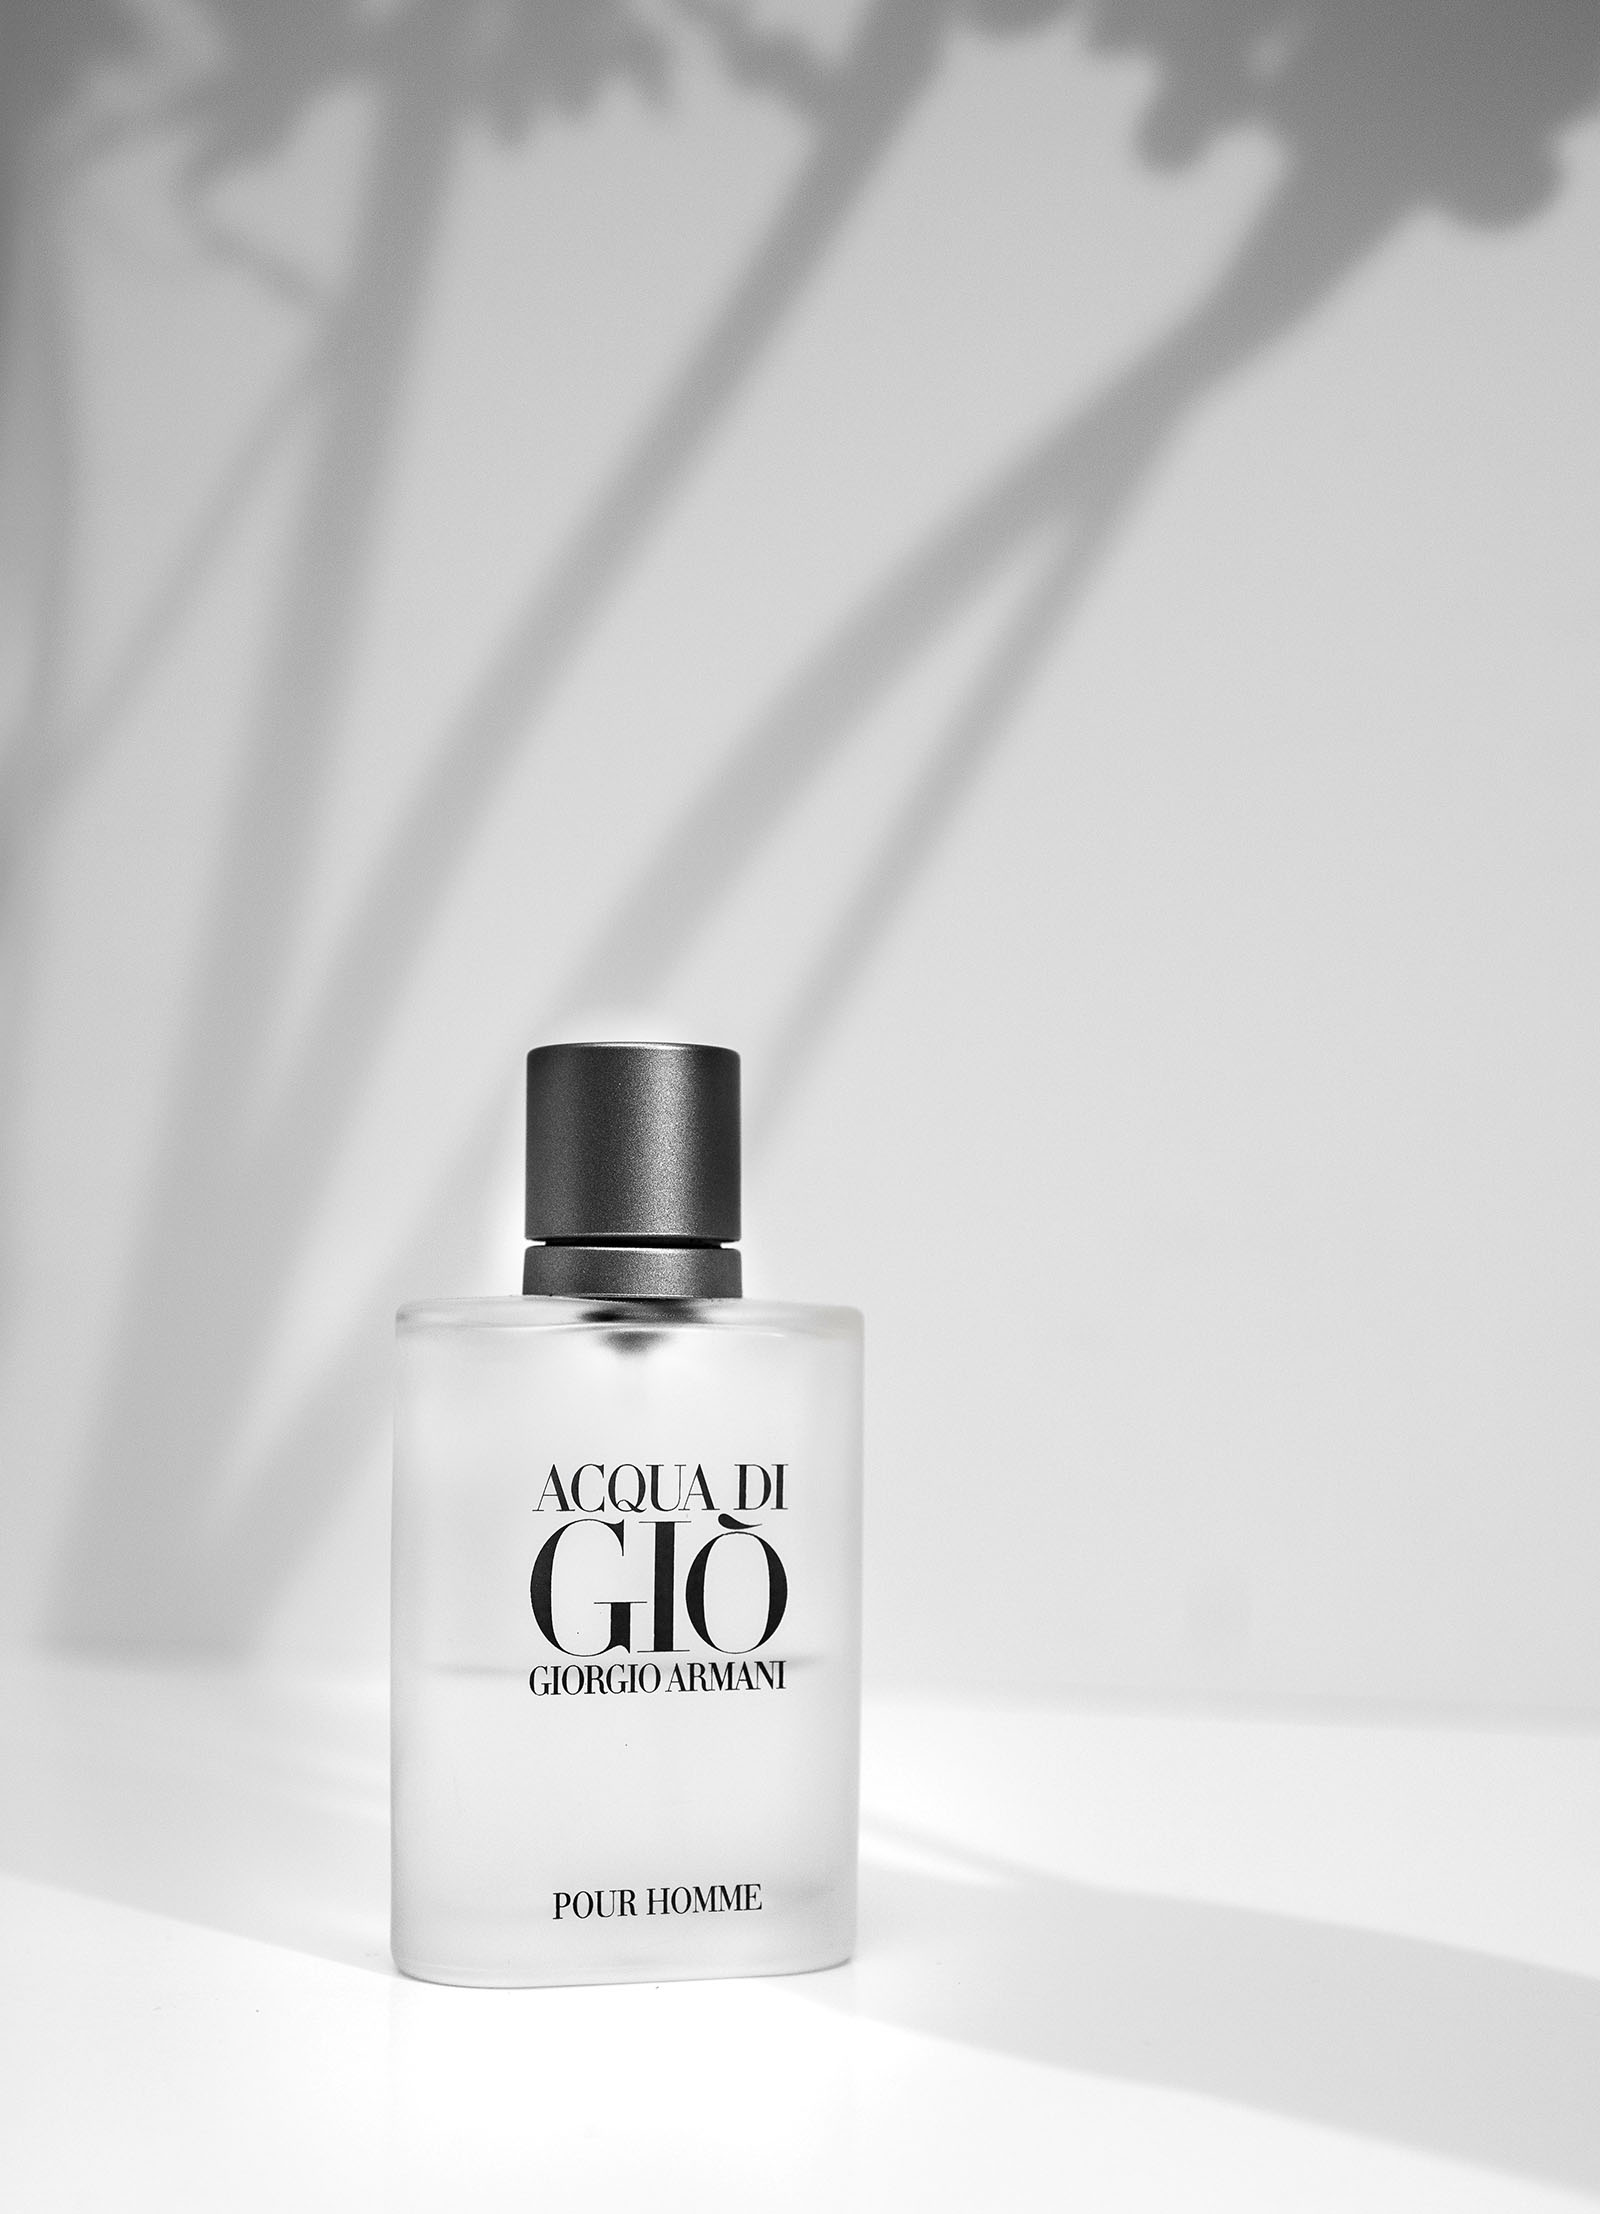 Giorgio Armani Acqua di Gio is one of the best perfume for men